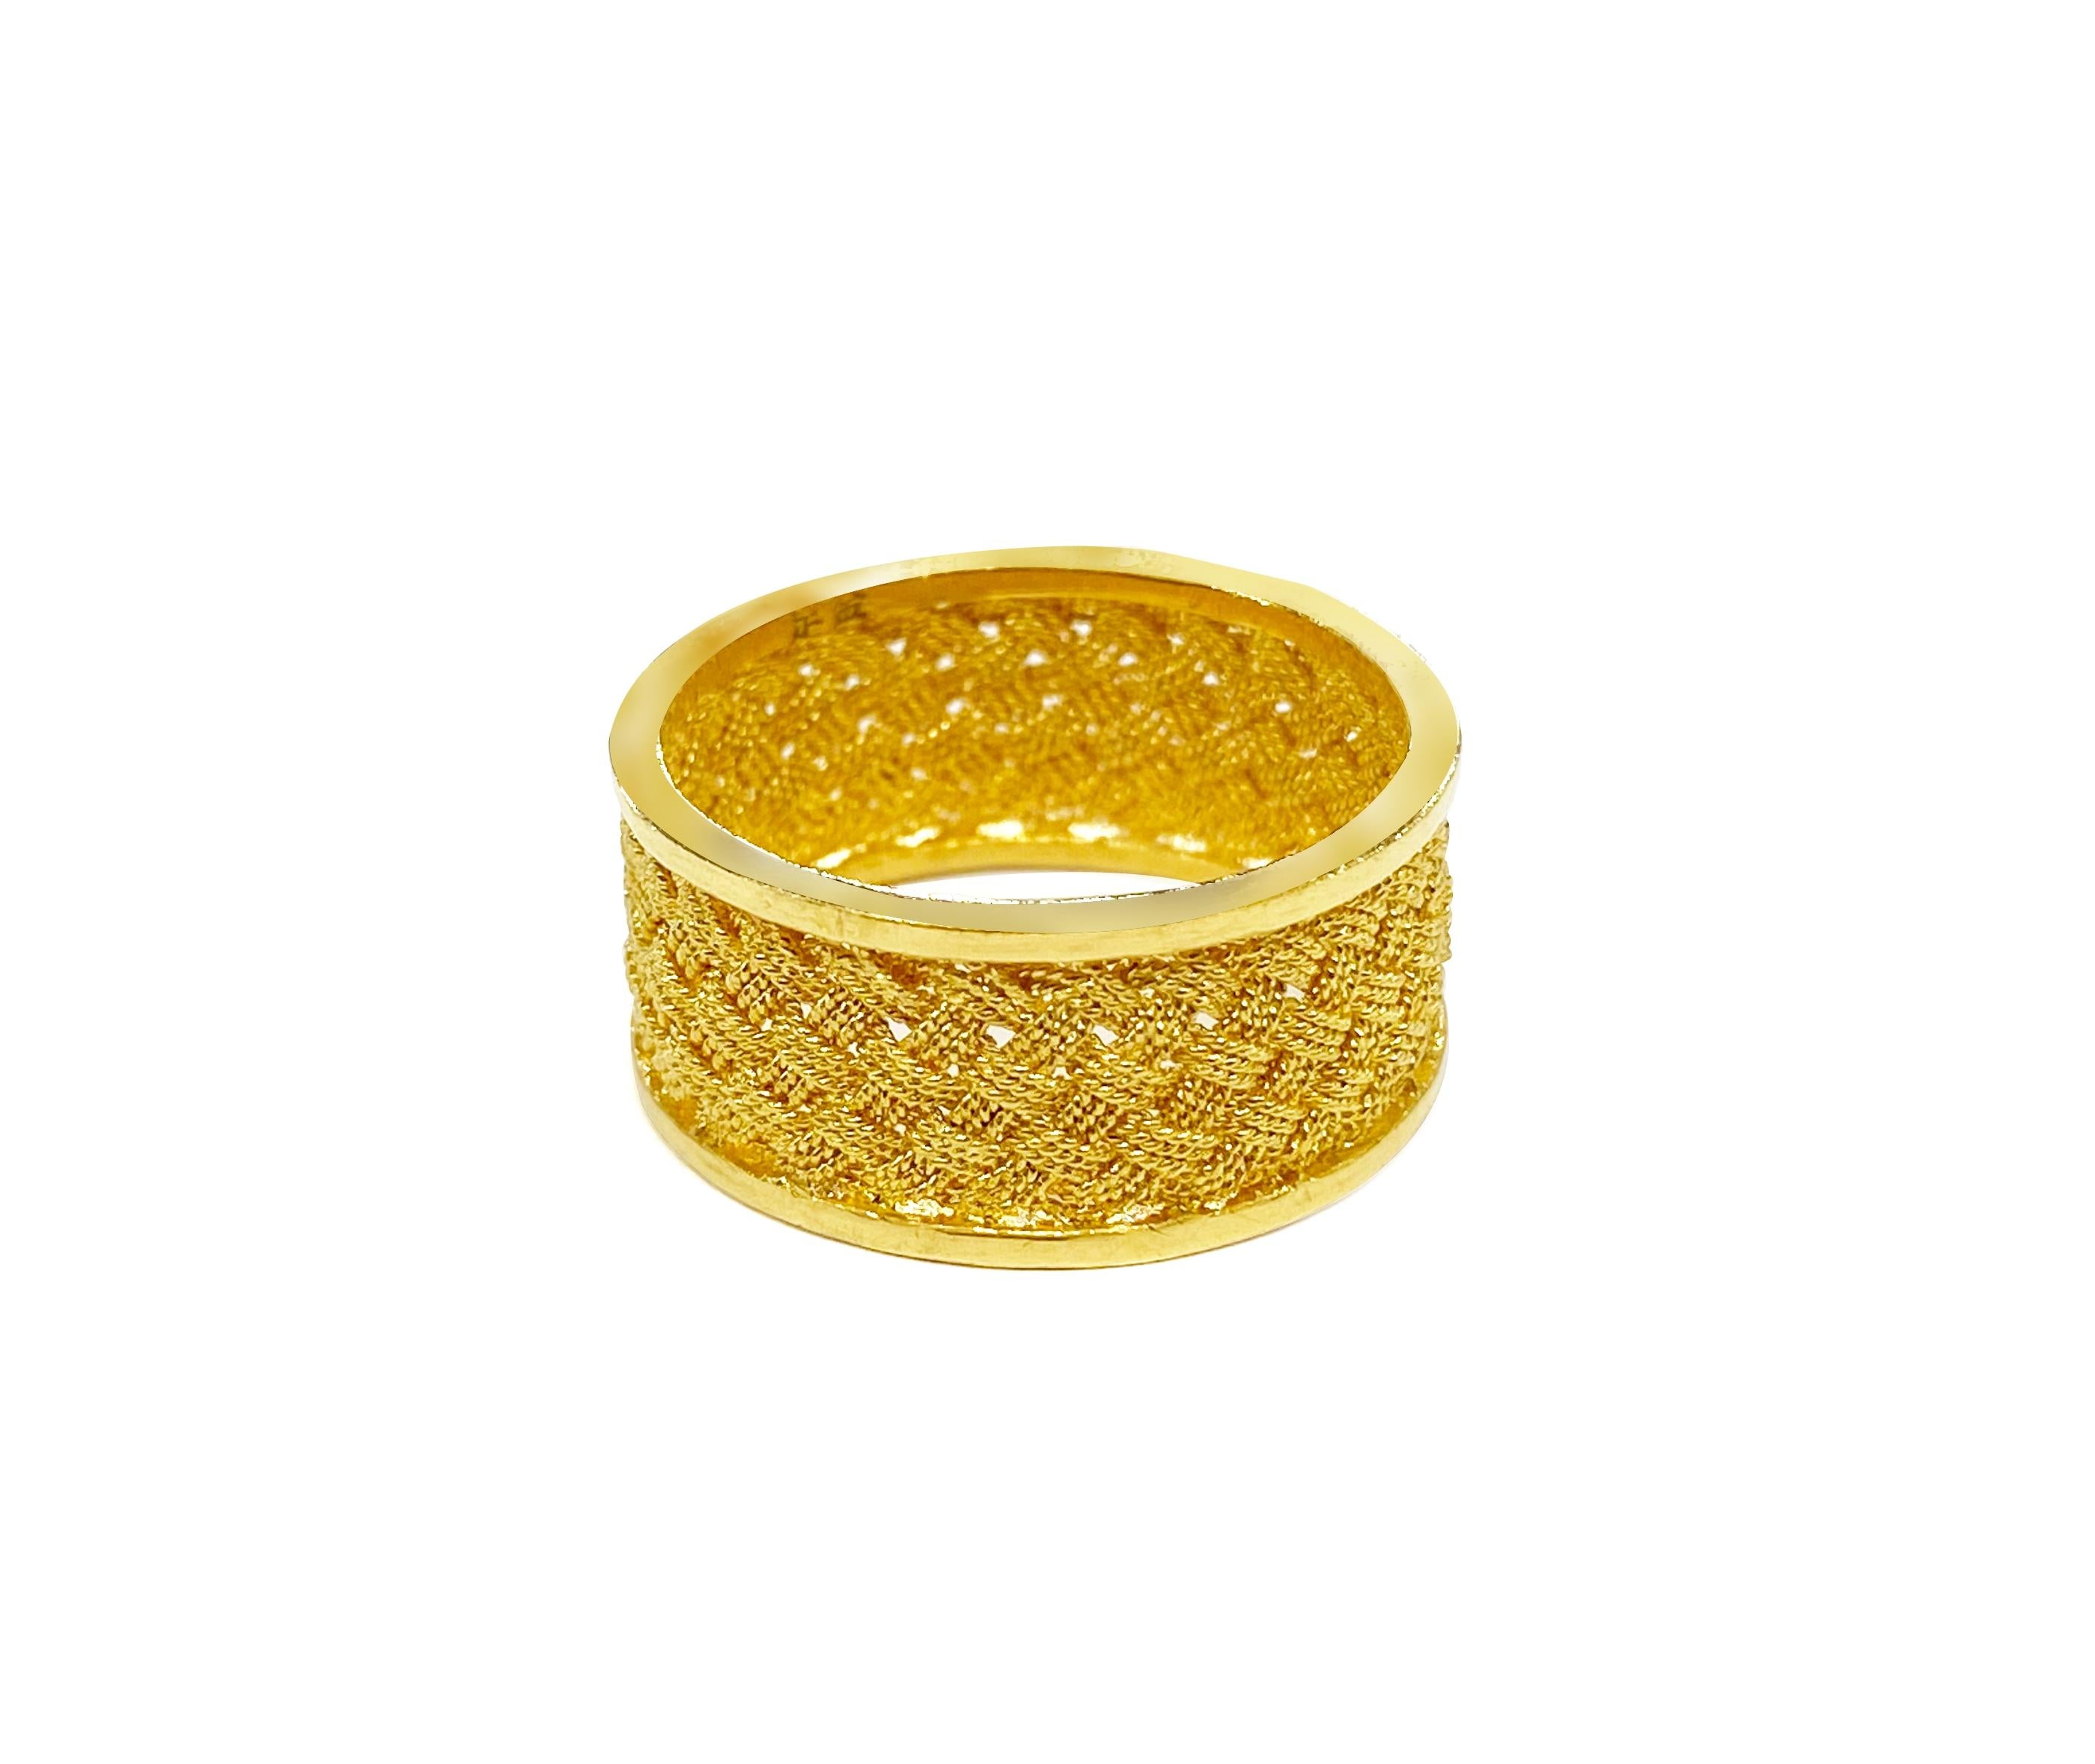 22 carat gold ring